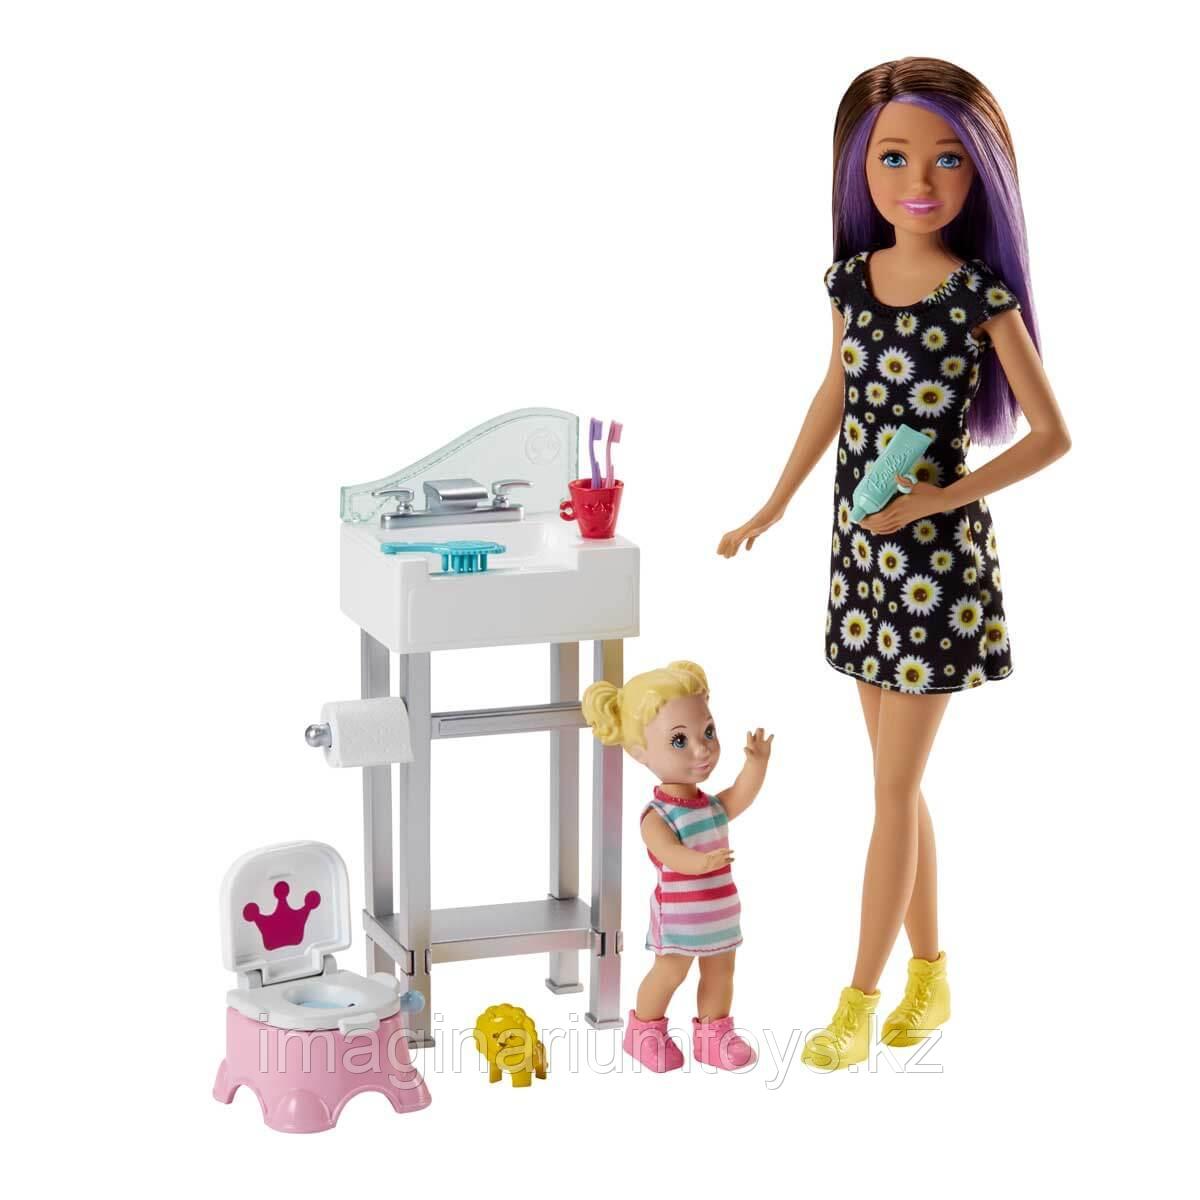 Барби Няня игровой набор с аксессуарами, фото 1